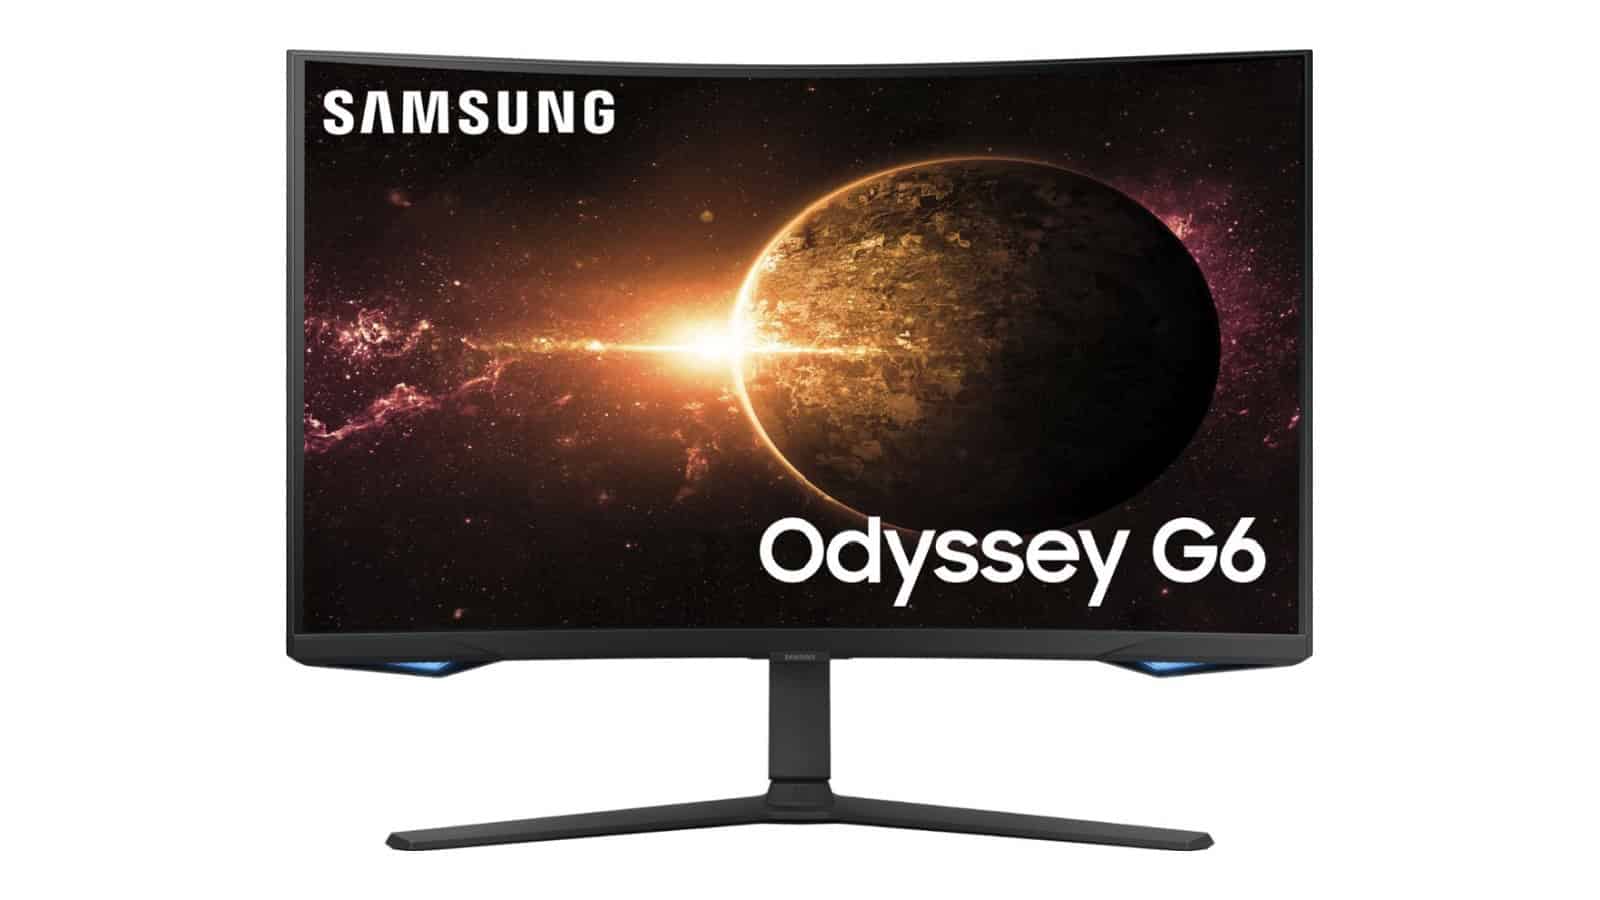 El monitor para juegos Odyssey G6 de Samsung ahora cuesta solo $500